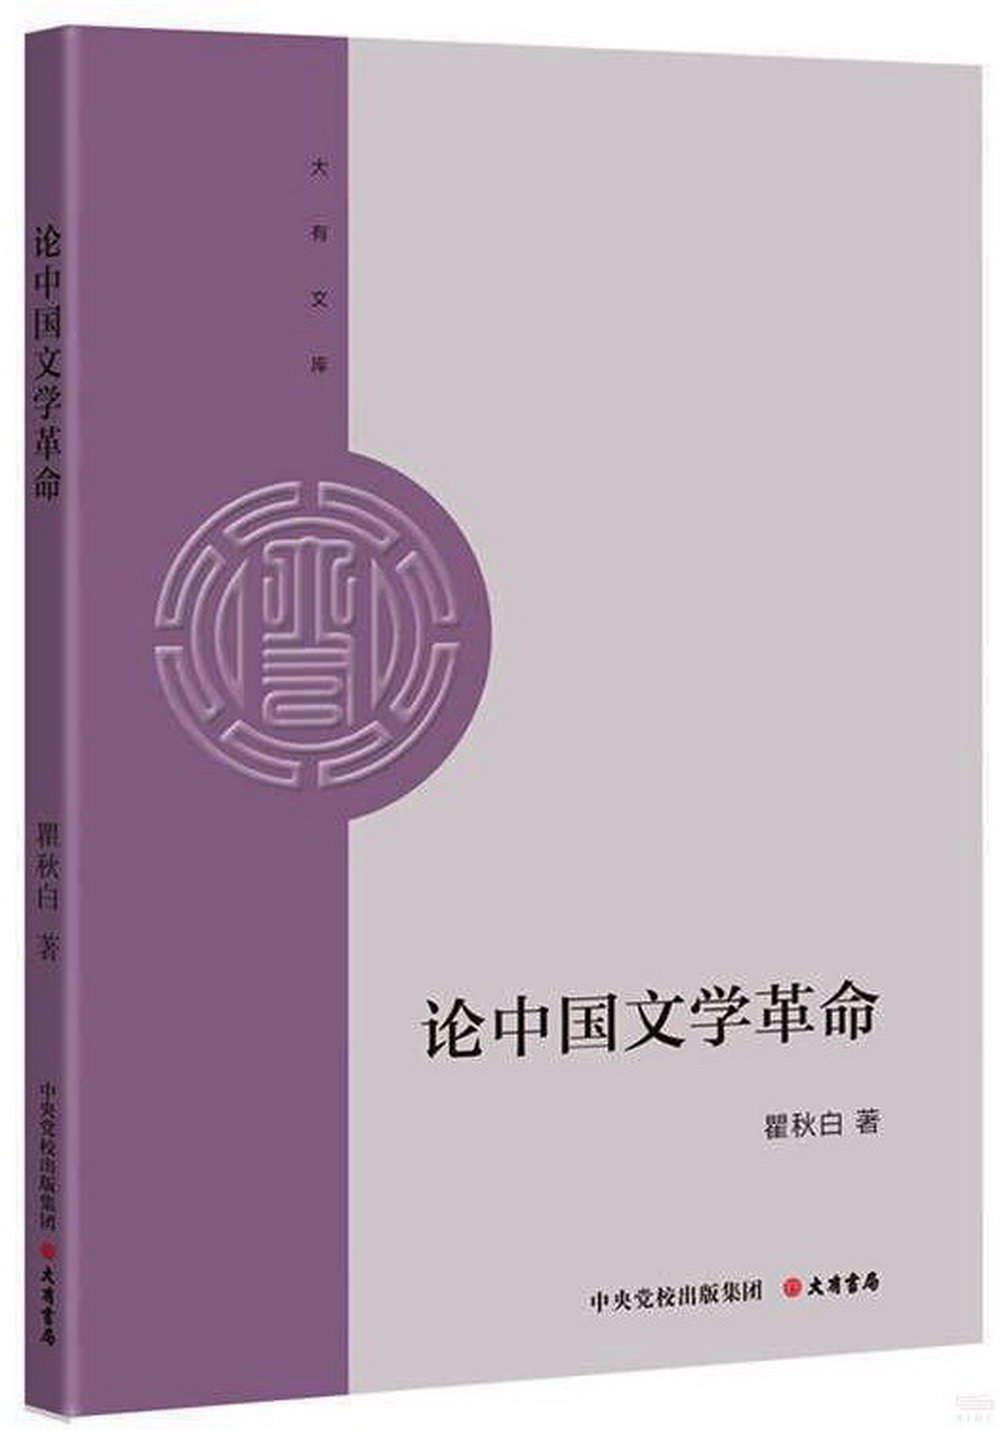 論中國文學革命